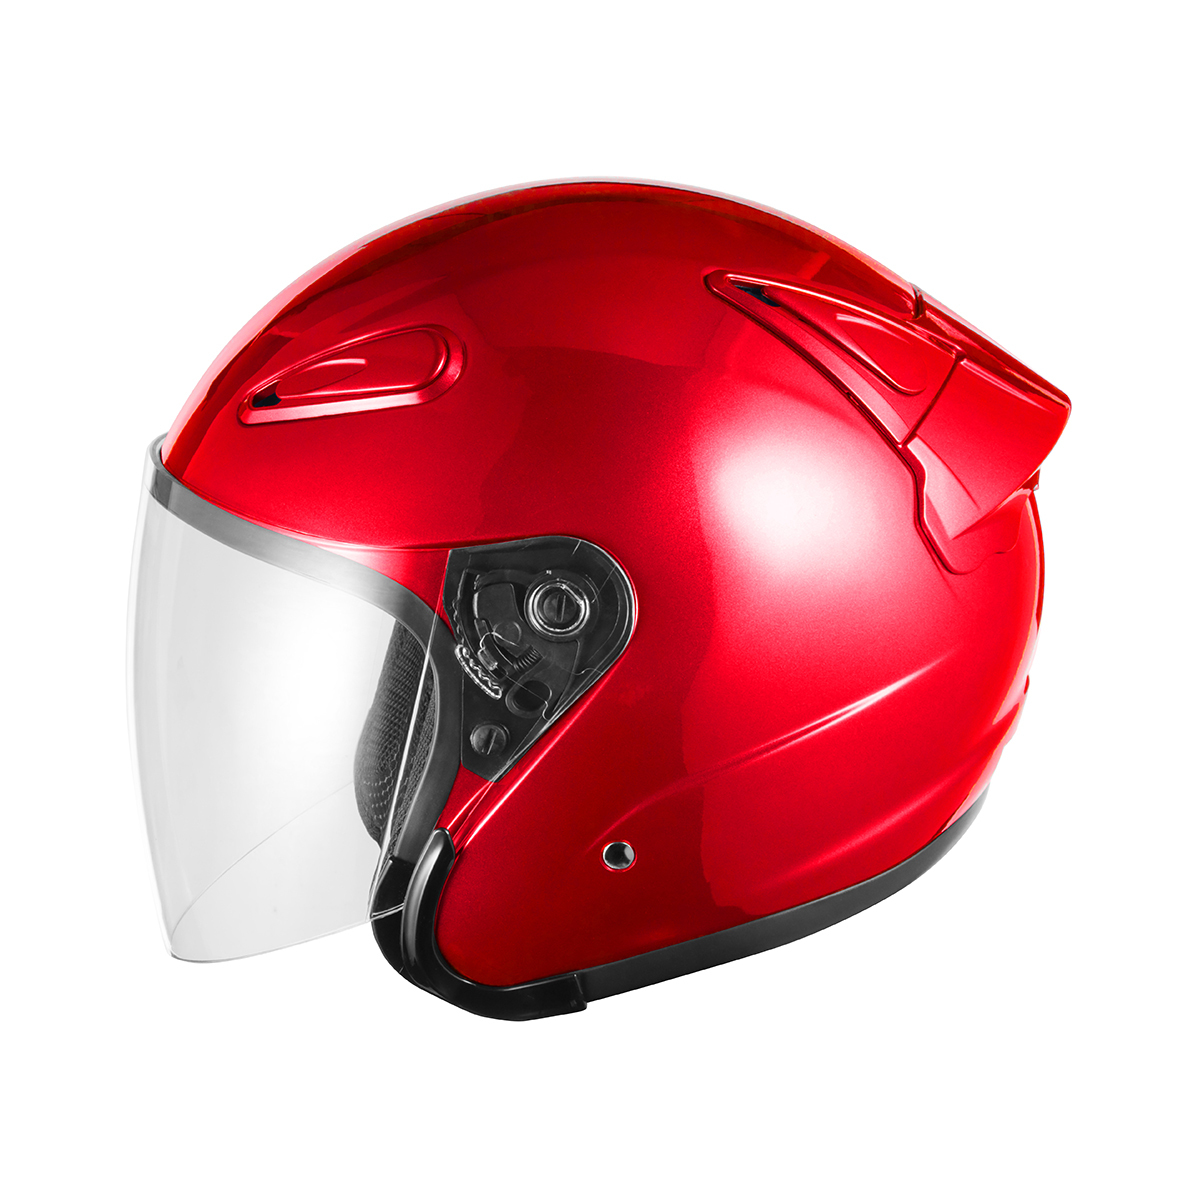 バイクヘルメット SG規格適合 PSCマーク付 Mサイズ エアロフォルムジェットヘルメット レッド バイク ヘルメット レディース ユニセックス_画像5